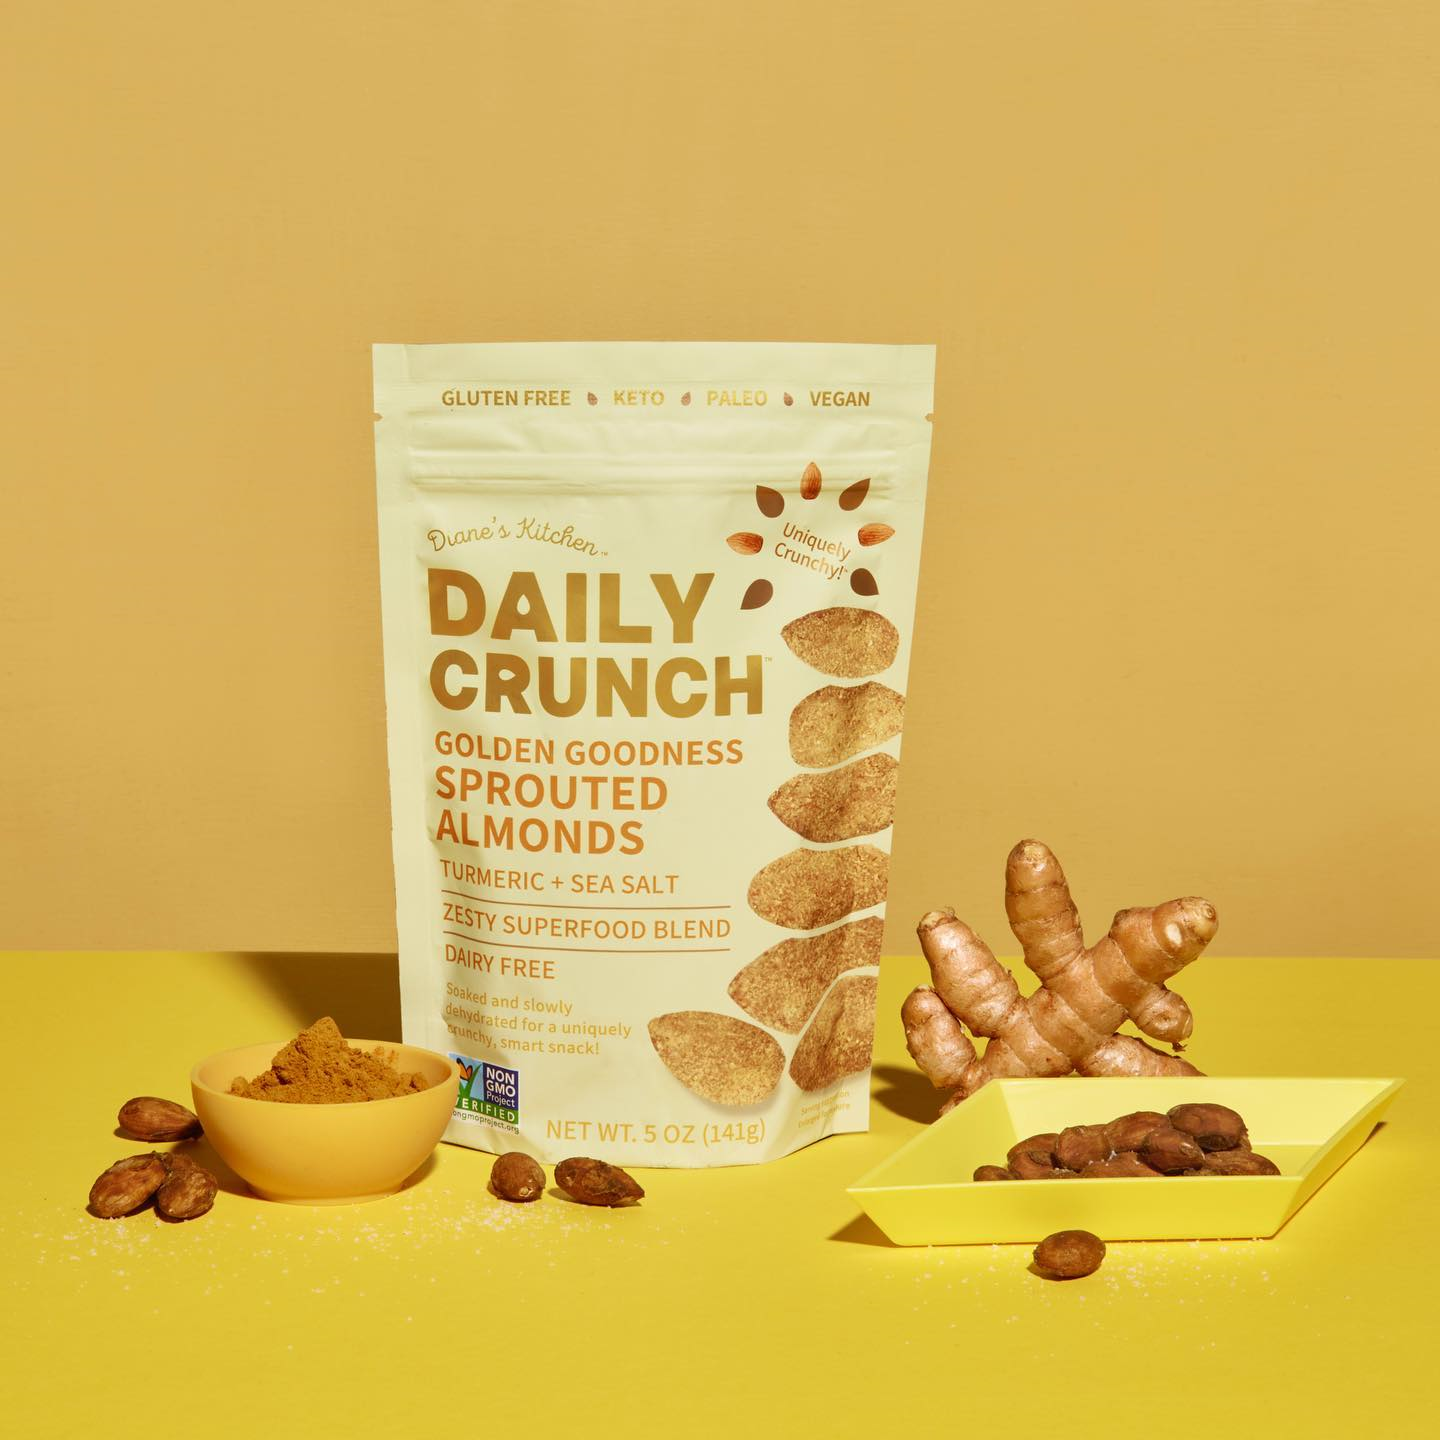 Daily Crunch Golden Goodness